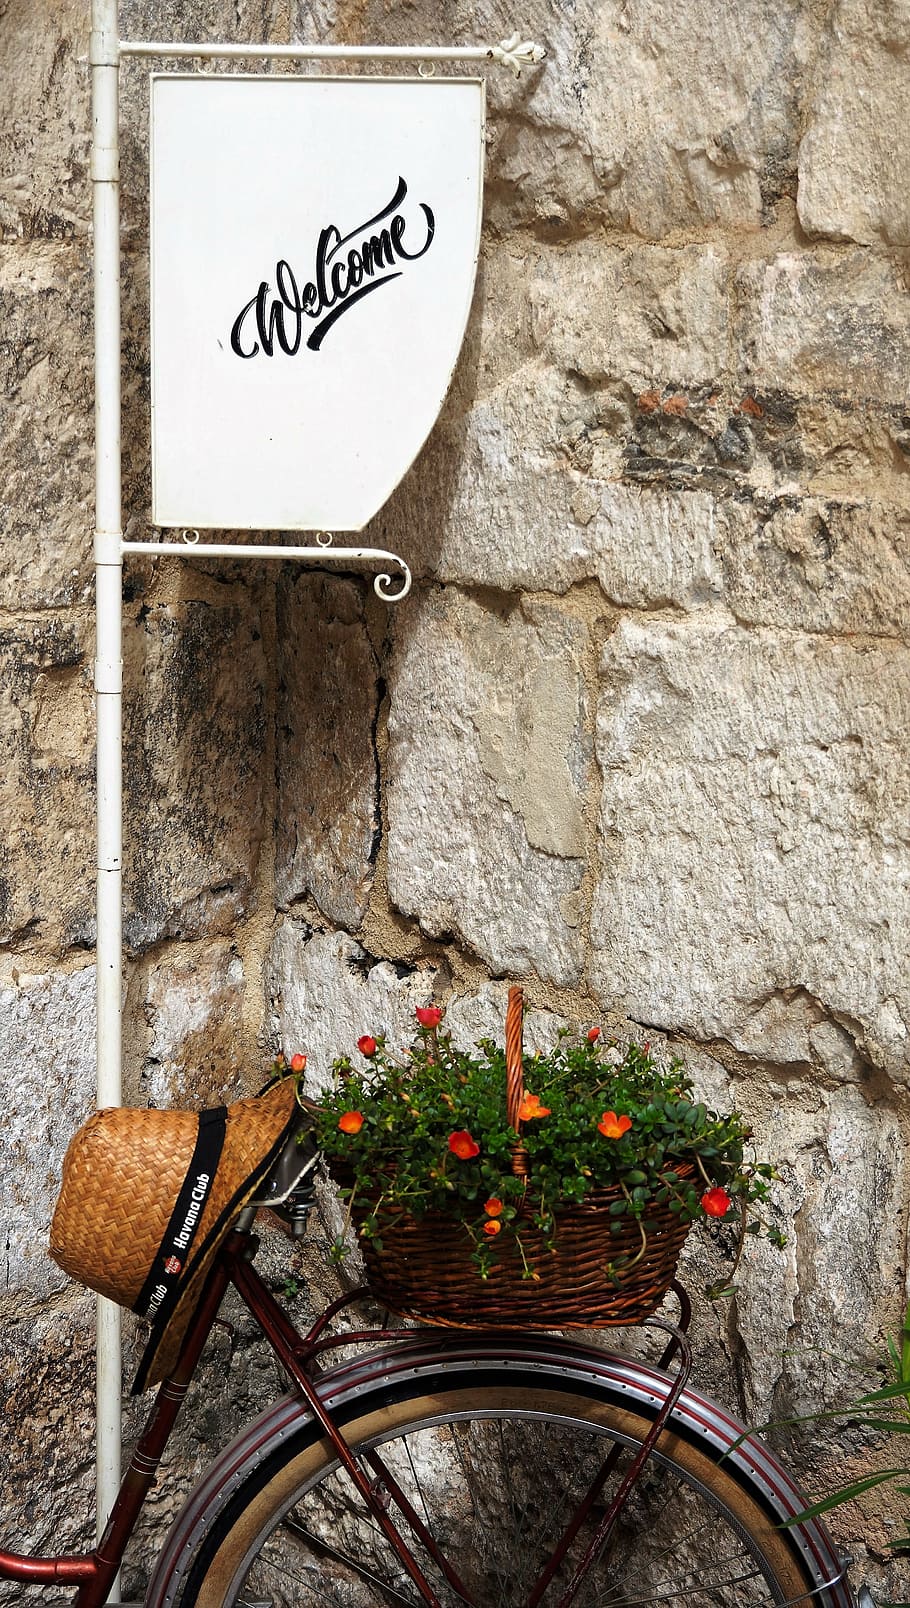 bicicleta, bem vindo, flores, chapéu, croácia, sinal, rua, característica de construção de parede, texto, ninguém